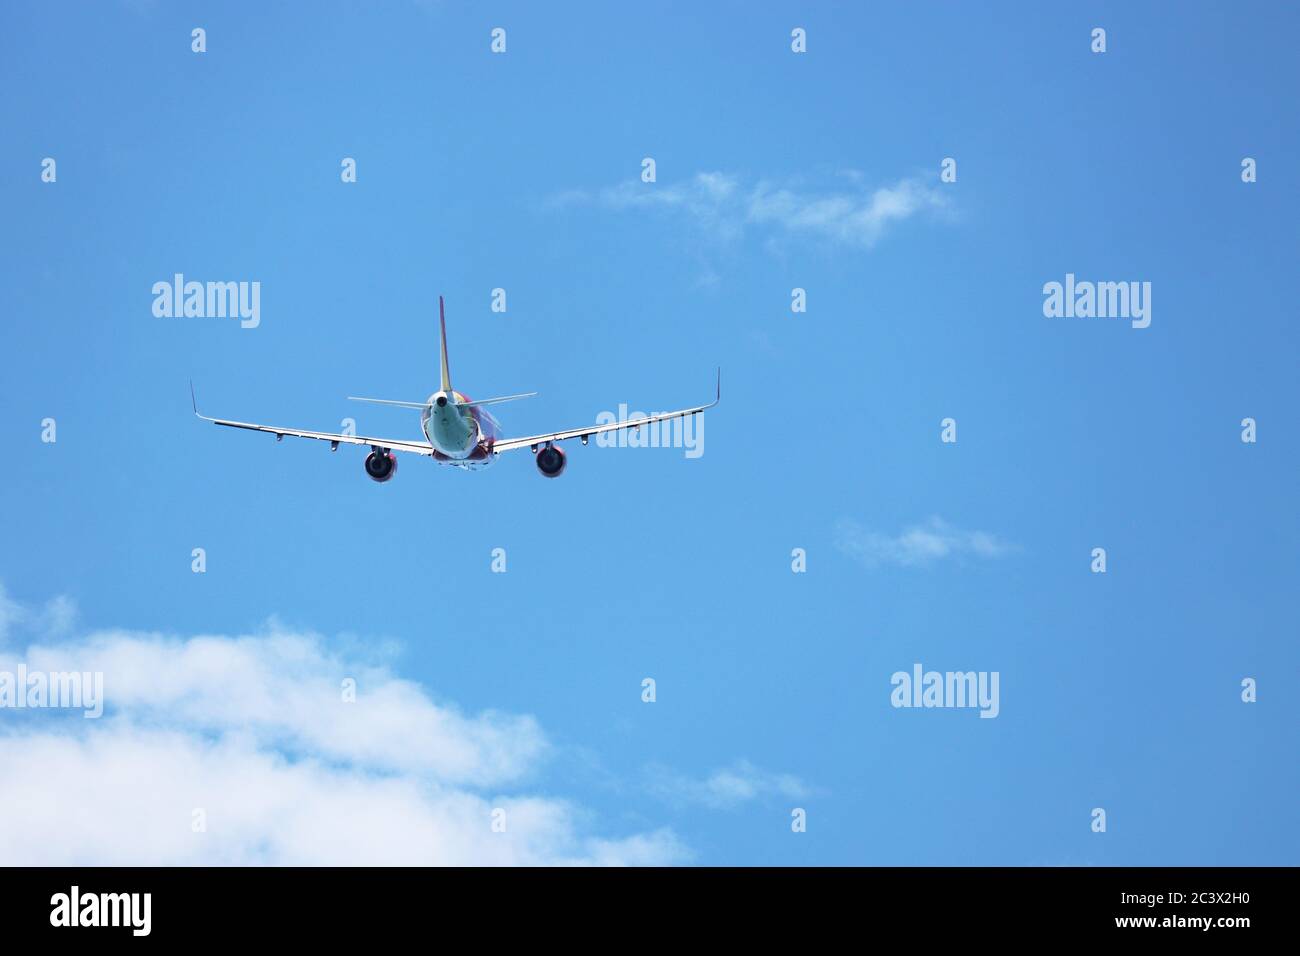 Avion volant dans le ciel bleu sur fond de nuages blancs, vue arrière. Avion commercial à deux moteurs pendant le tour, la turbulence et le concept de voyage Banque D'Images